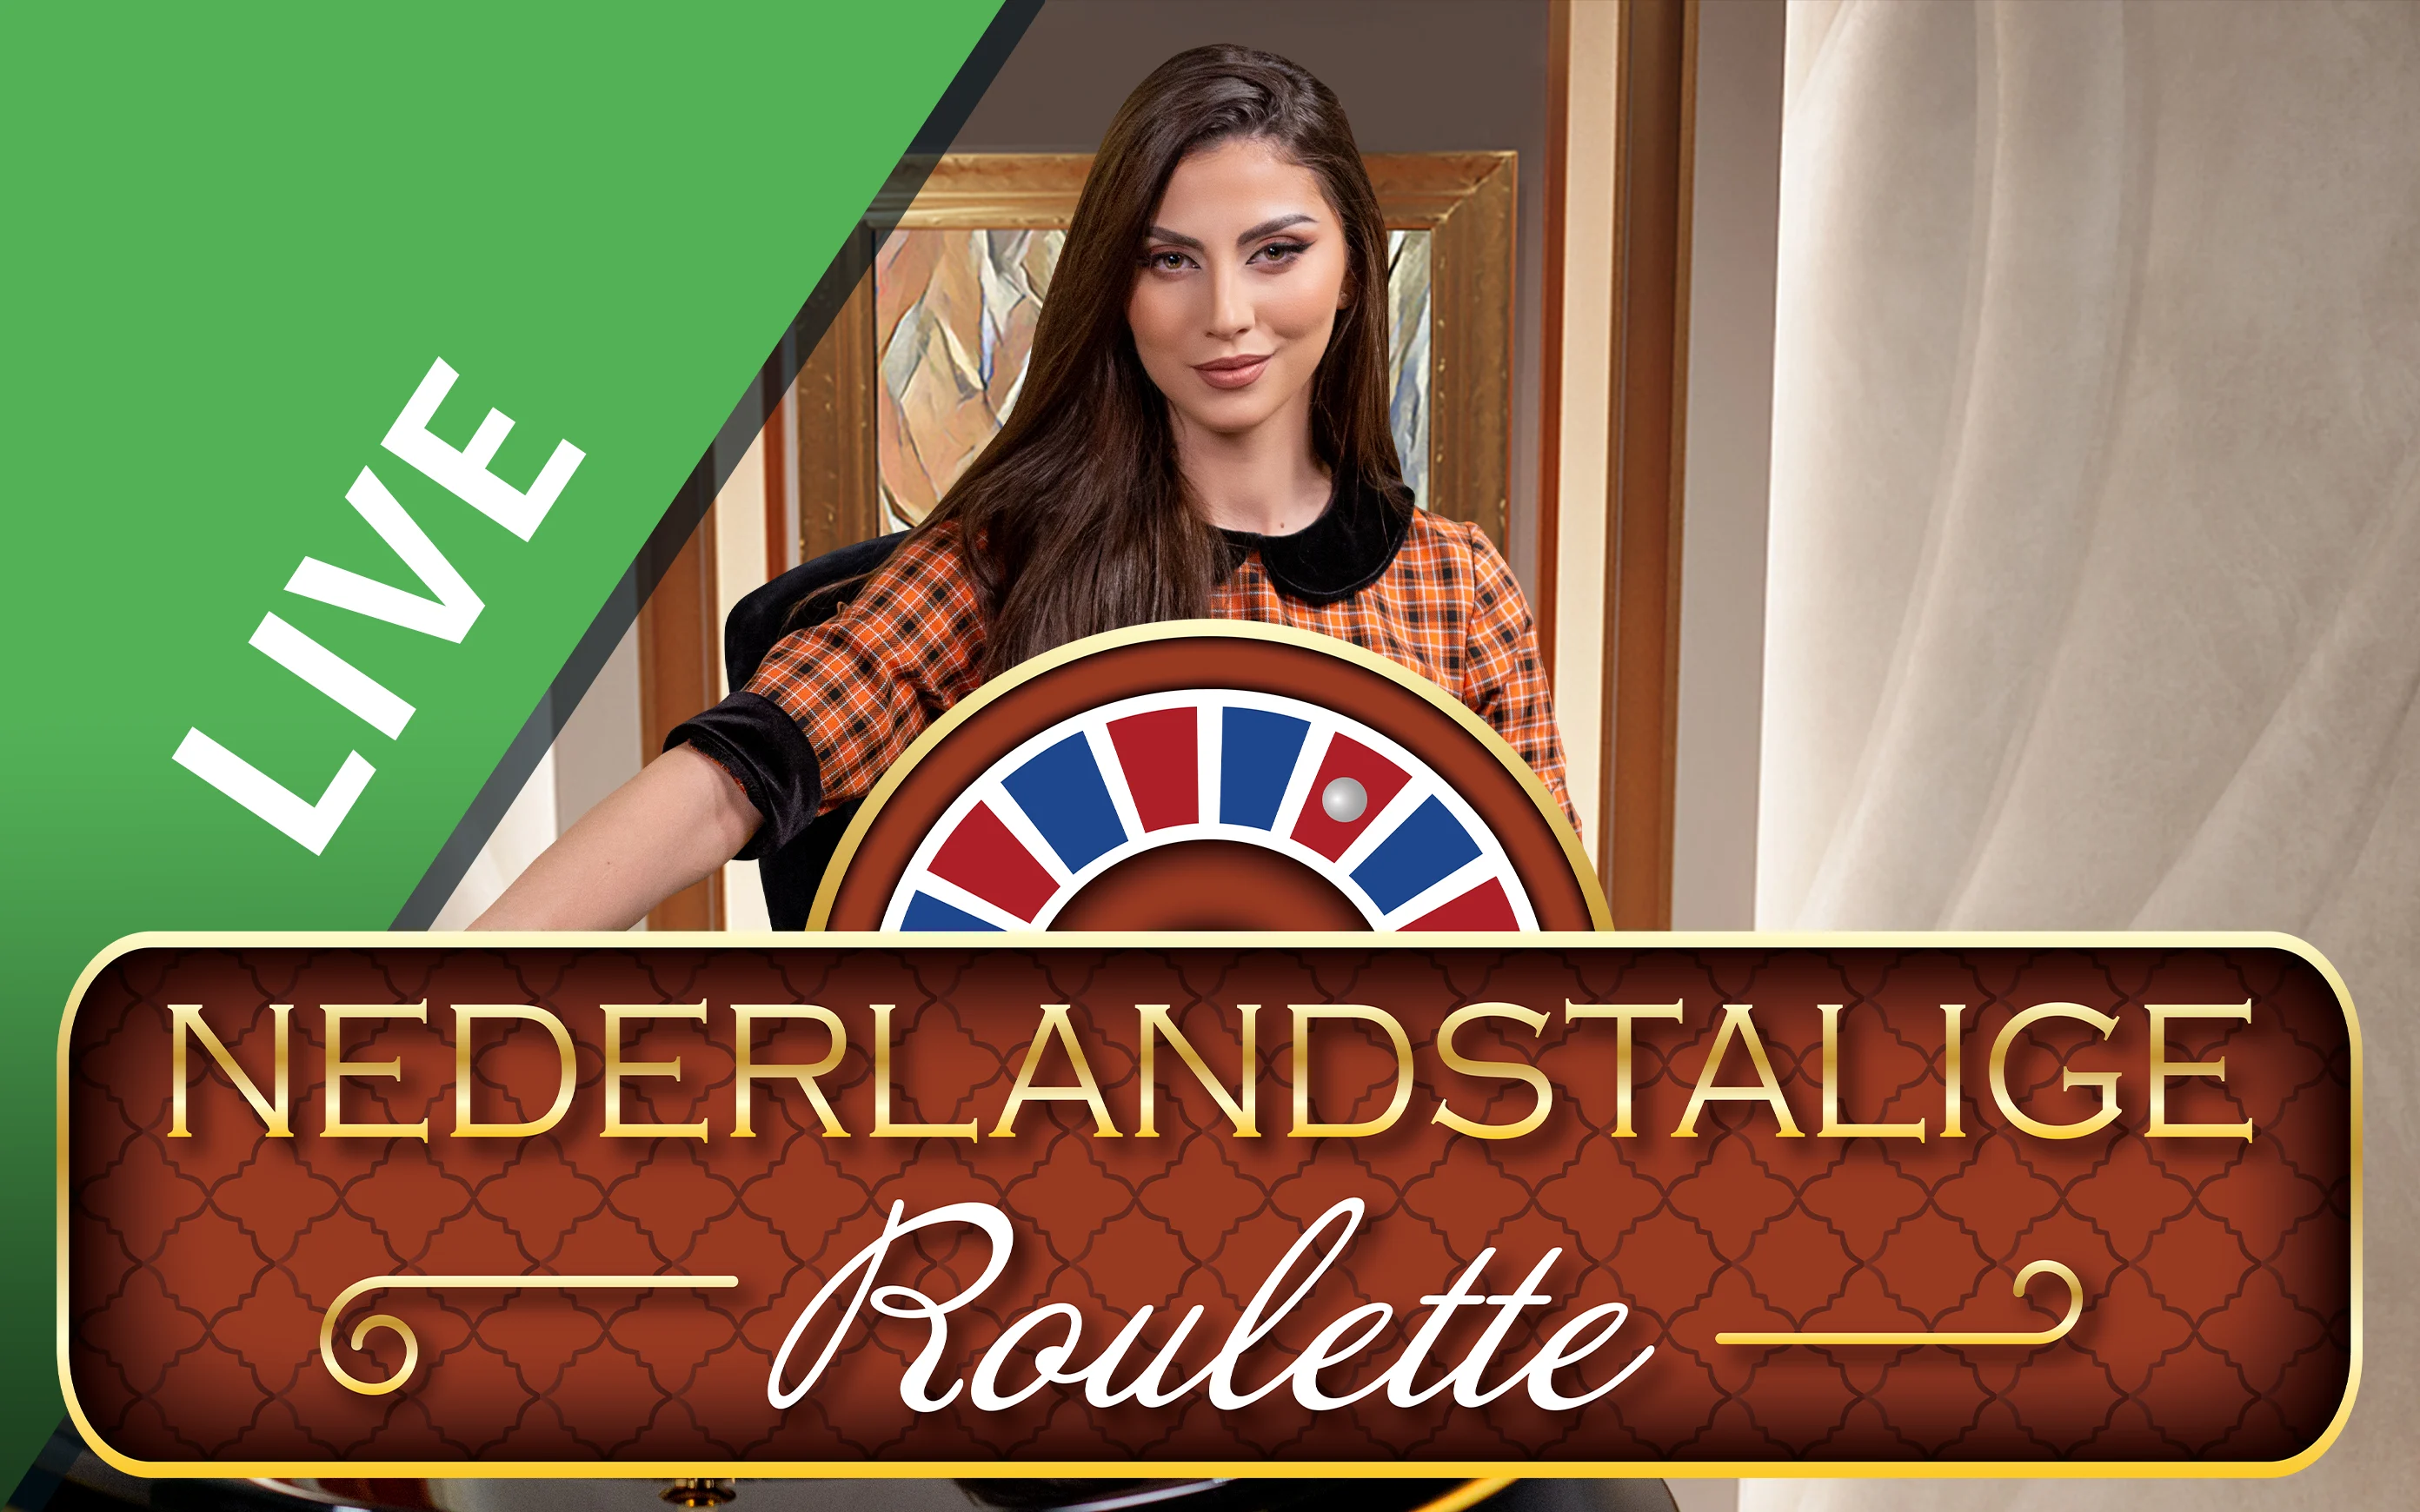 Juega a Nederlandstalige Roulette en el casino en línea de Starcasino.be